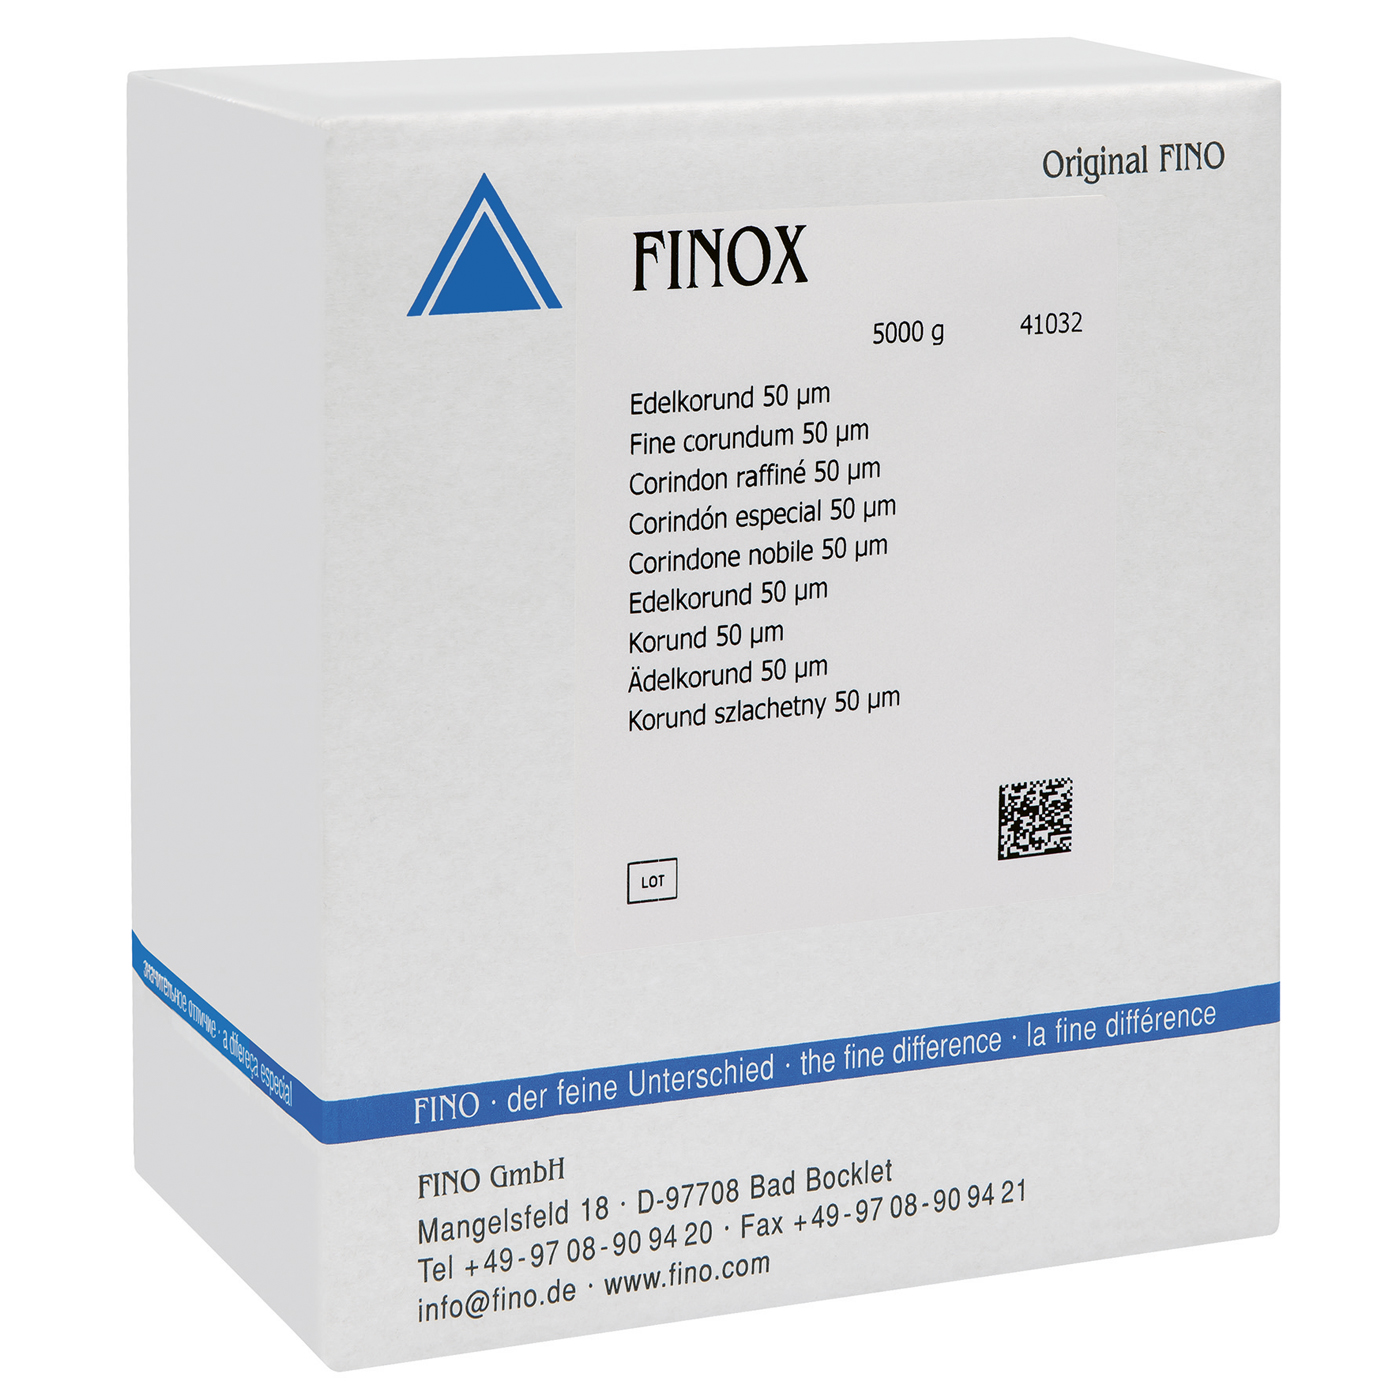 FINOX Edelkorund, 50 µm - 5000 g